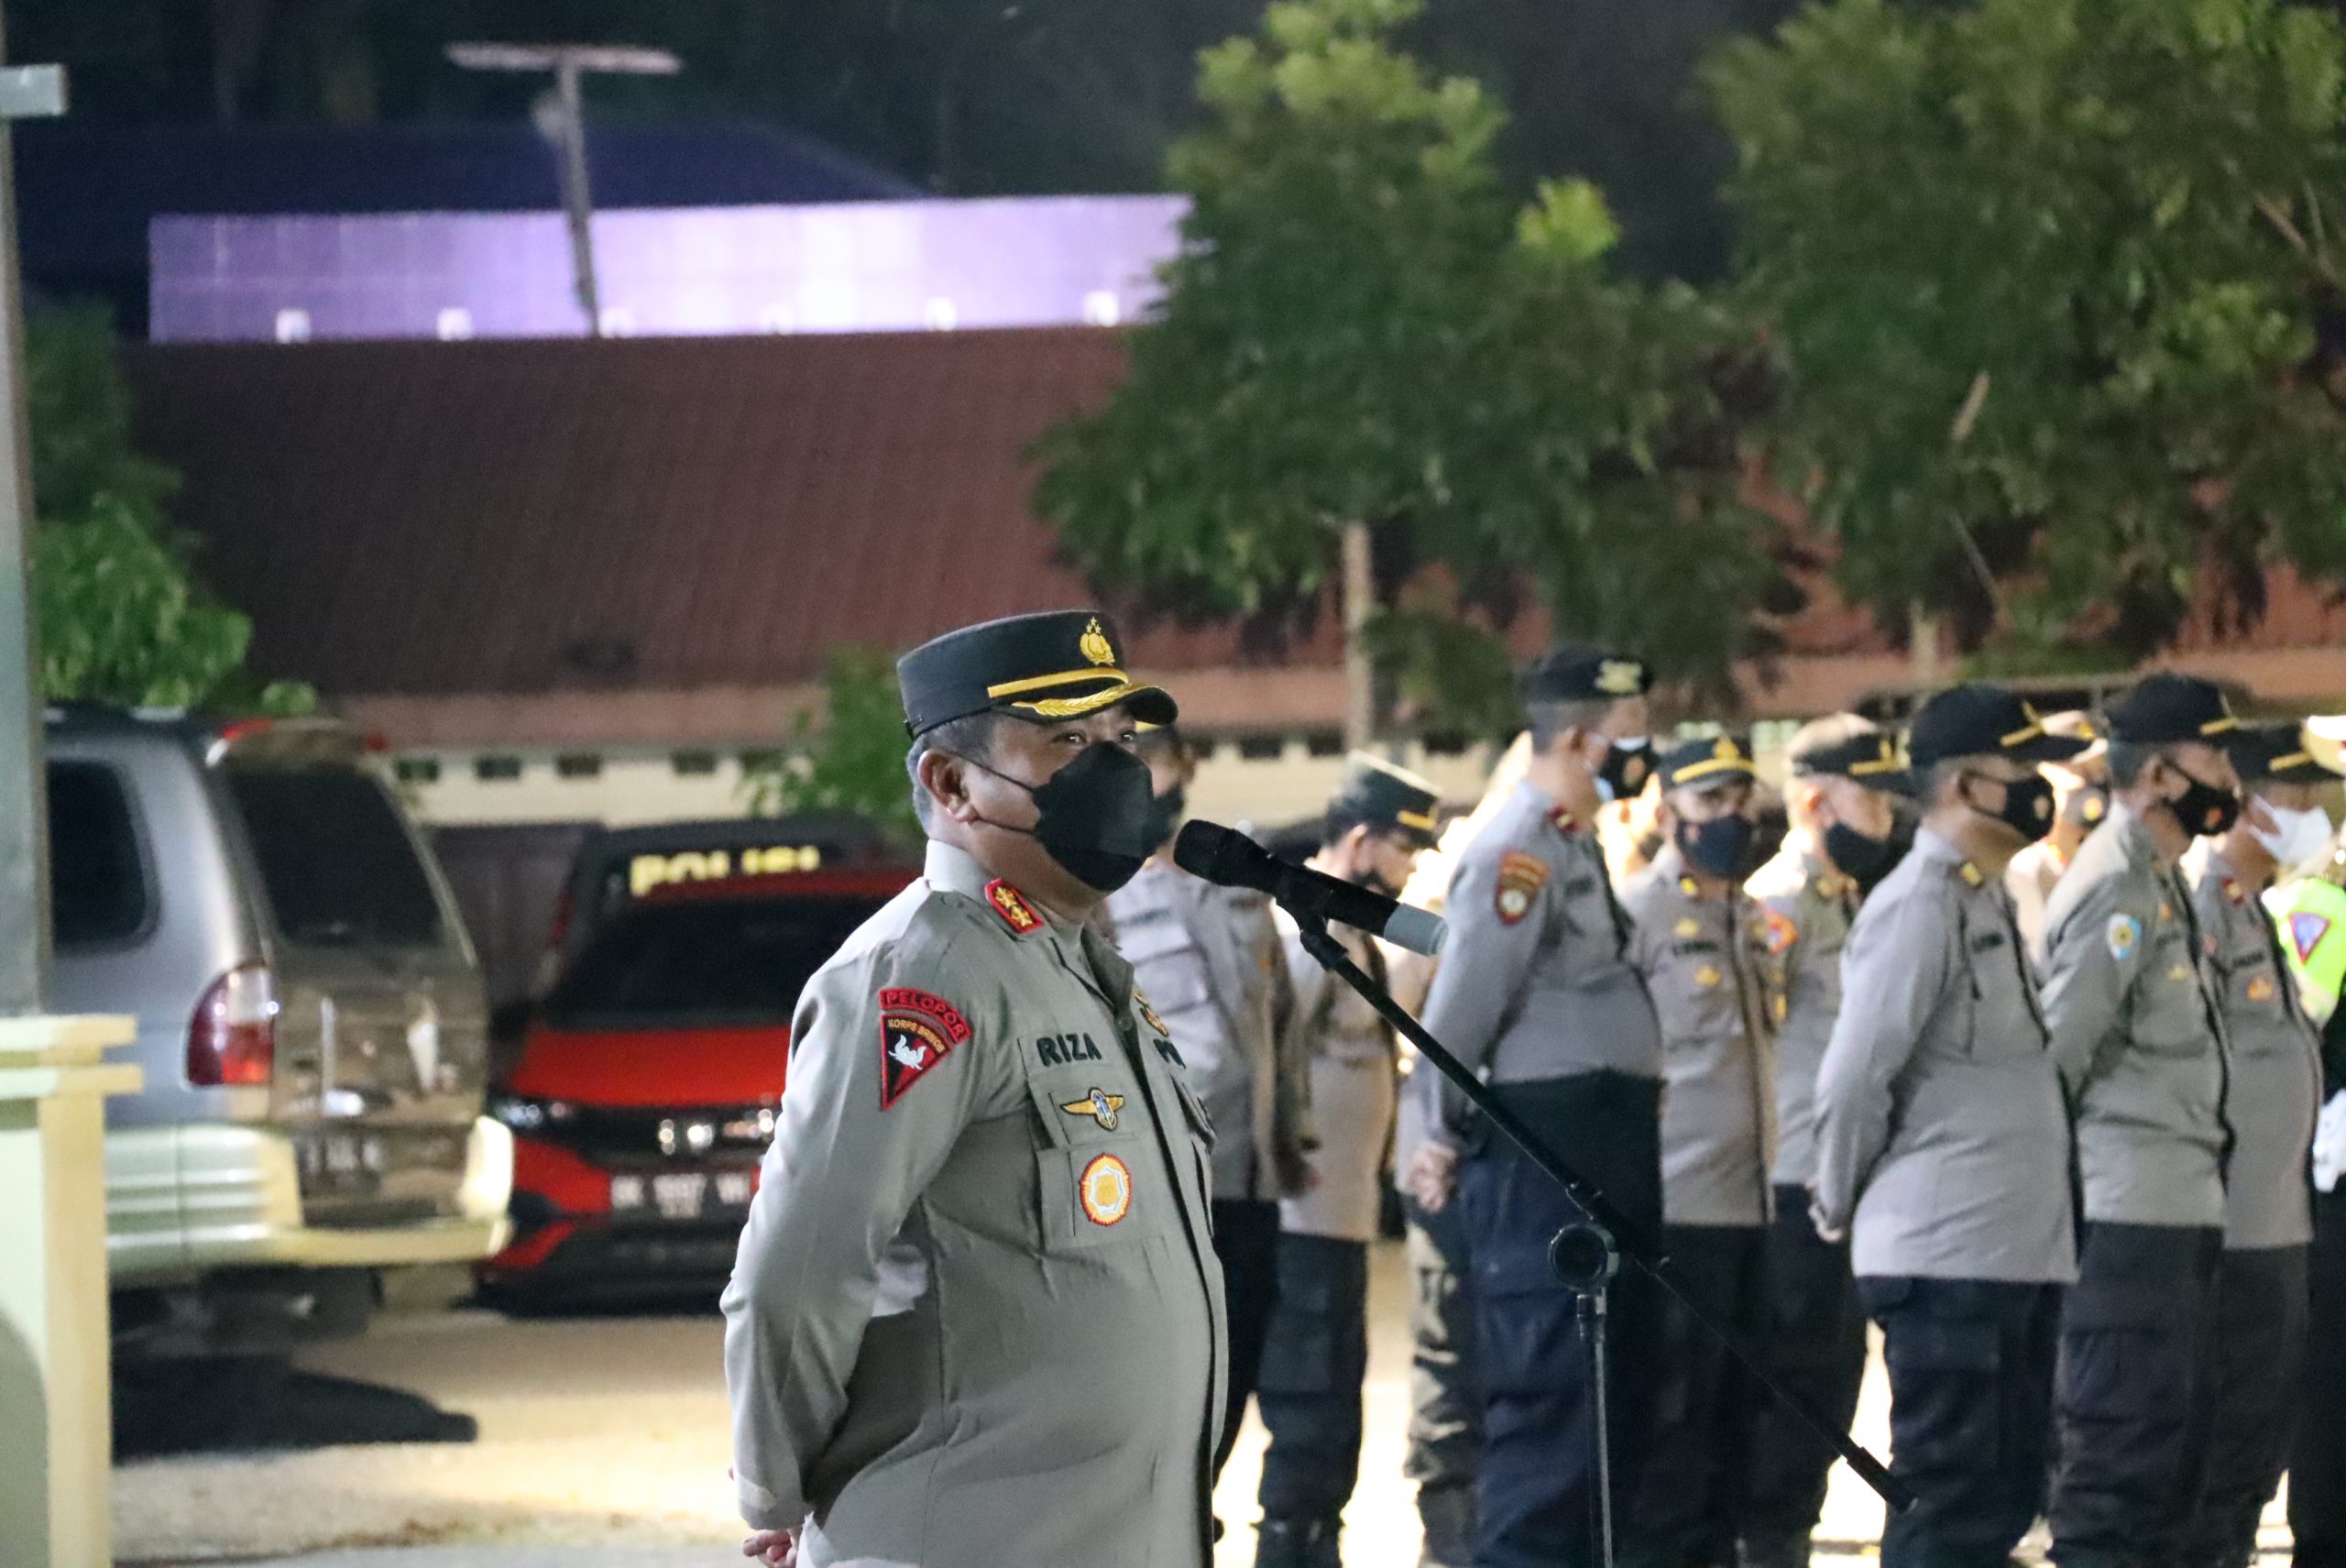 Cegah kerawanan di malam lebaran, Polres Aceh Utara Gelar Patroli Berskala Besar